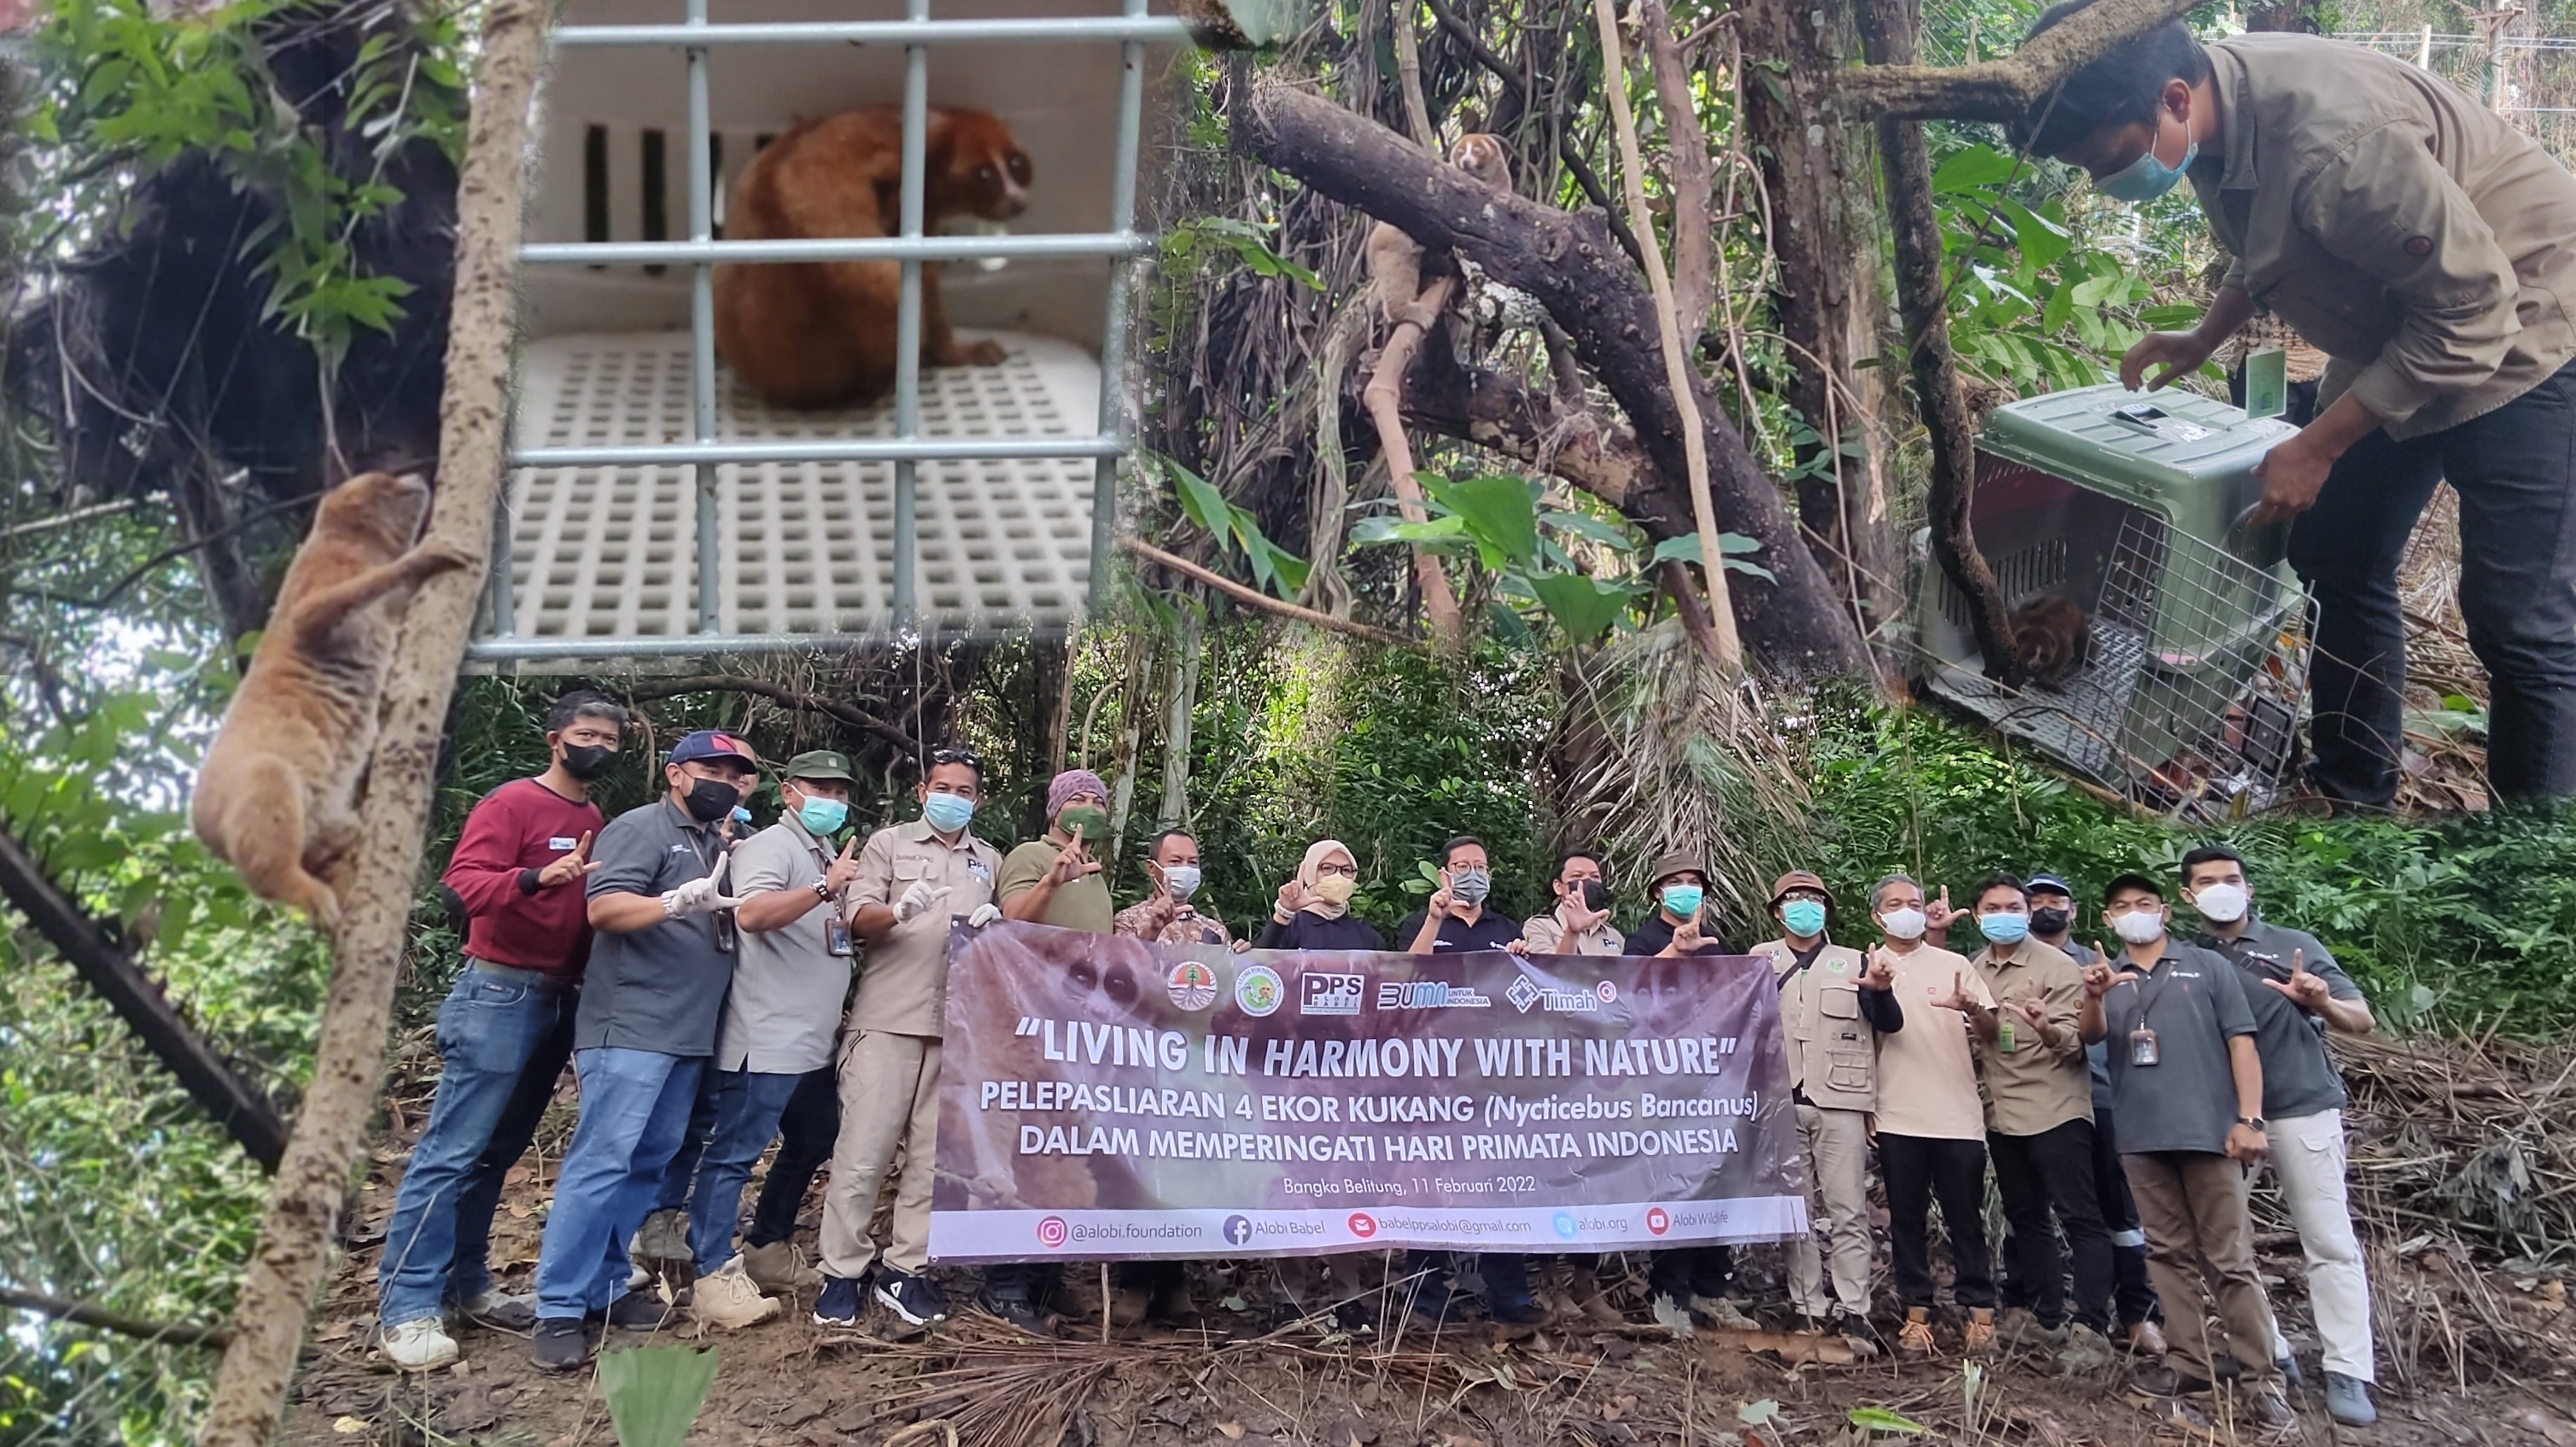 Peringati Hari Primata Indonesia  4 Ekor Kukang Bangka (Nycticebus bancanus) Kembali Ke Rumah